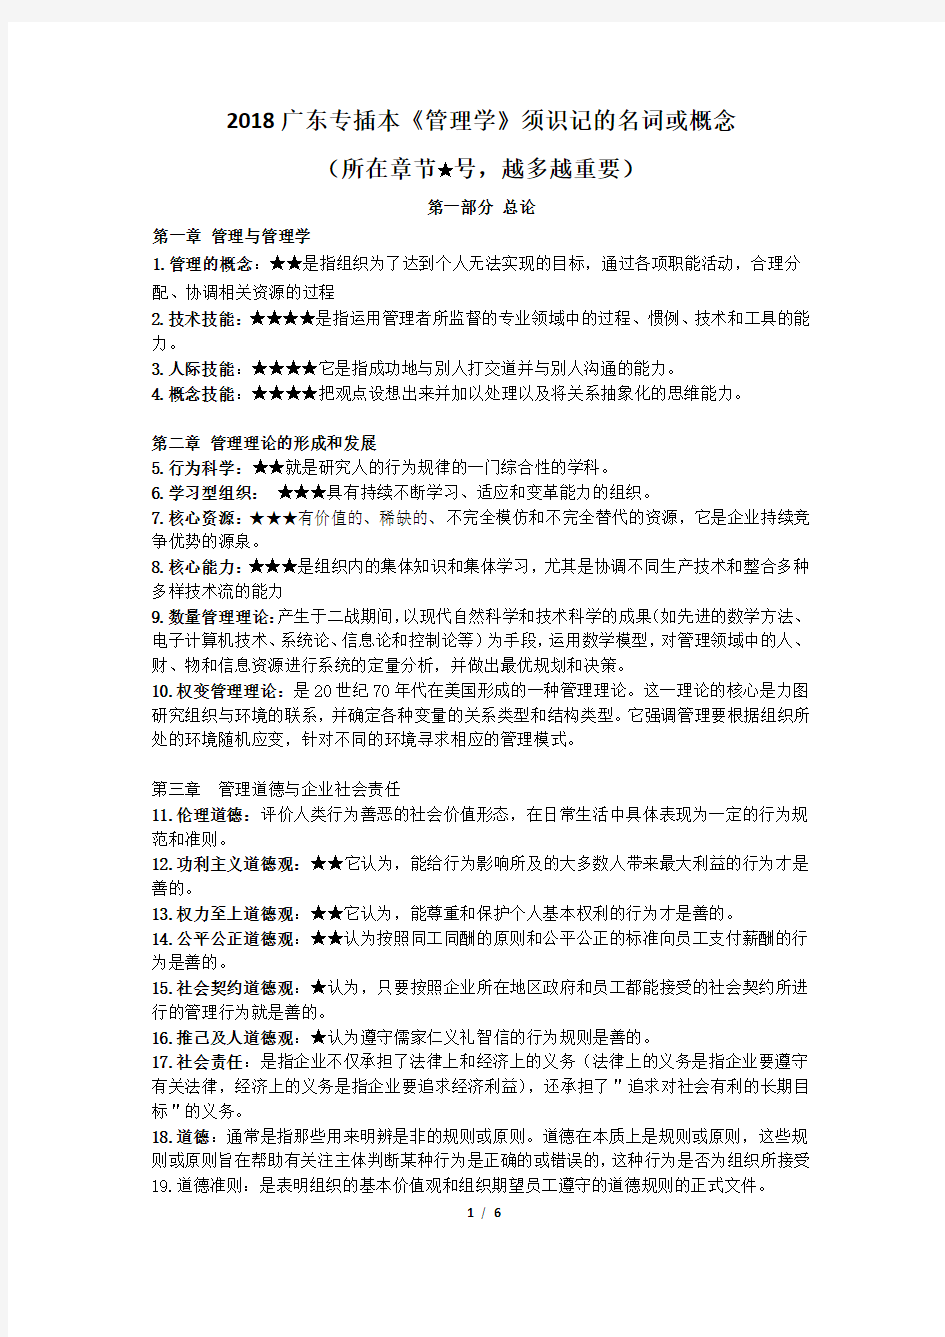 (完整word版)2018广东专插本考试大纲规定的管理学识记的名词或概念